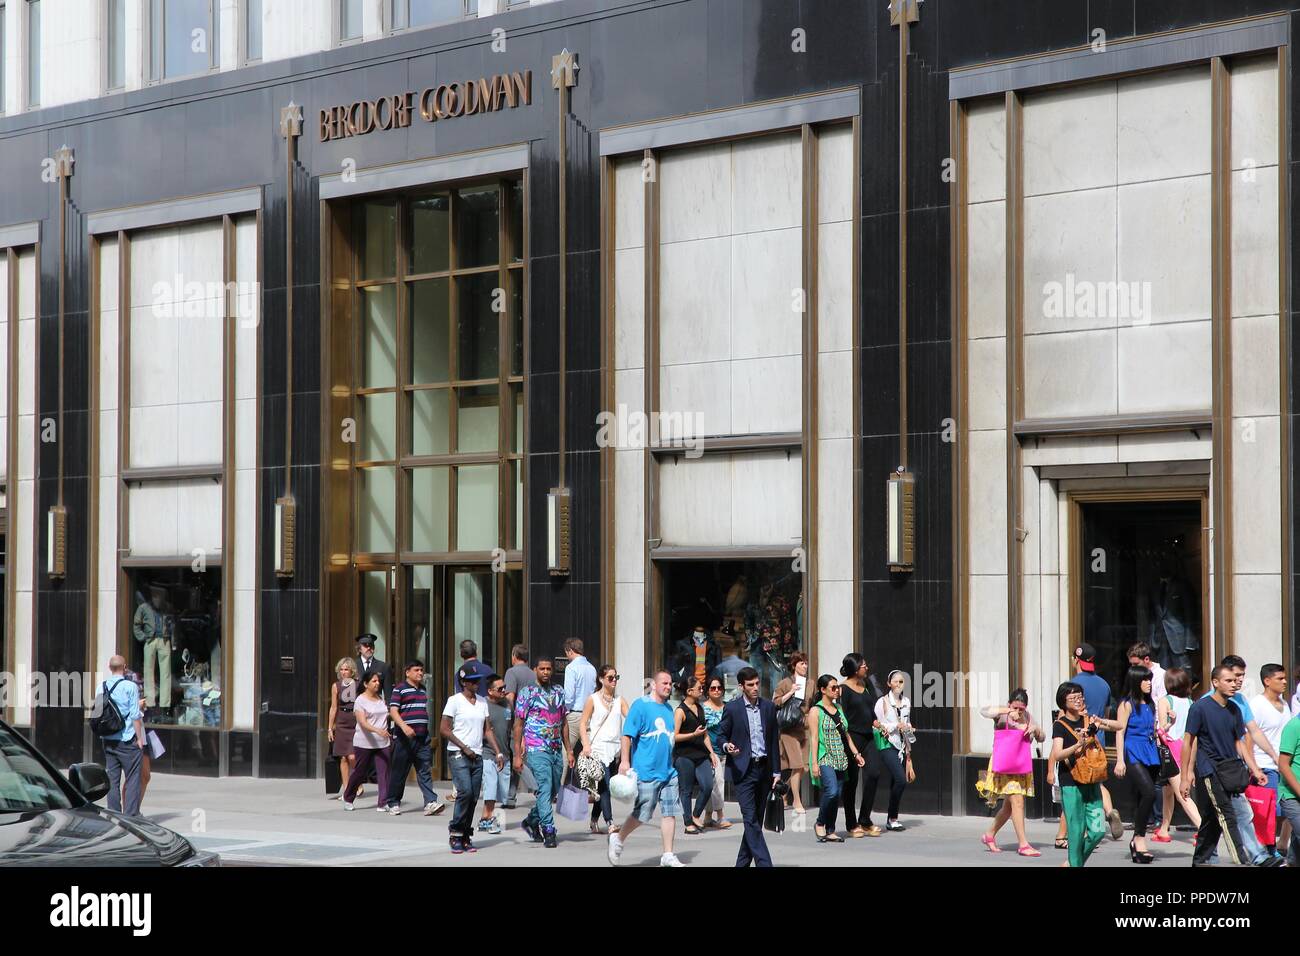 NEW YORK, Stati Uniti d'America - 2 Luglio 2, 2013: Bergdorf Goodman department store di Fifth Avenue, New York. Bergdorf Goodman è un Luxury department store fondata nel 1899 Foto Stock